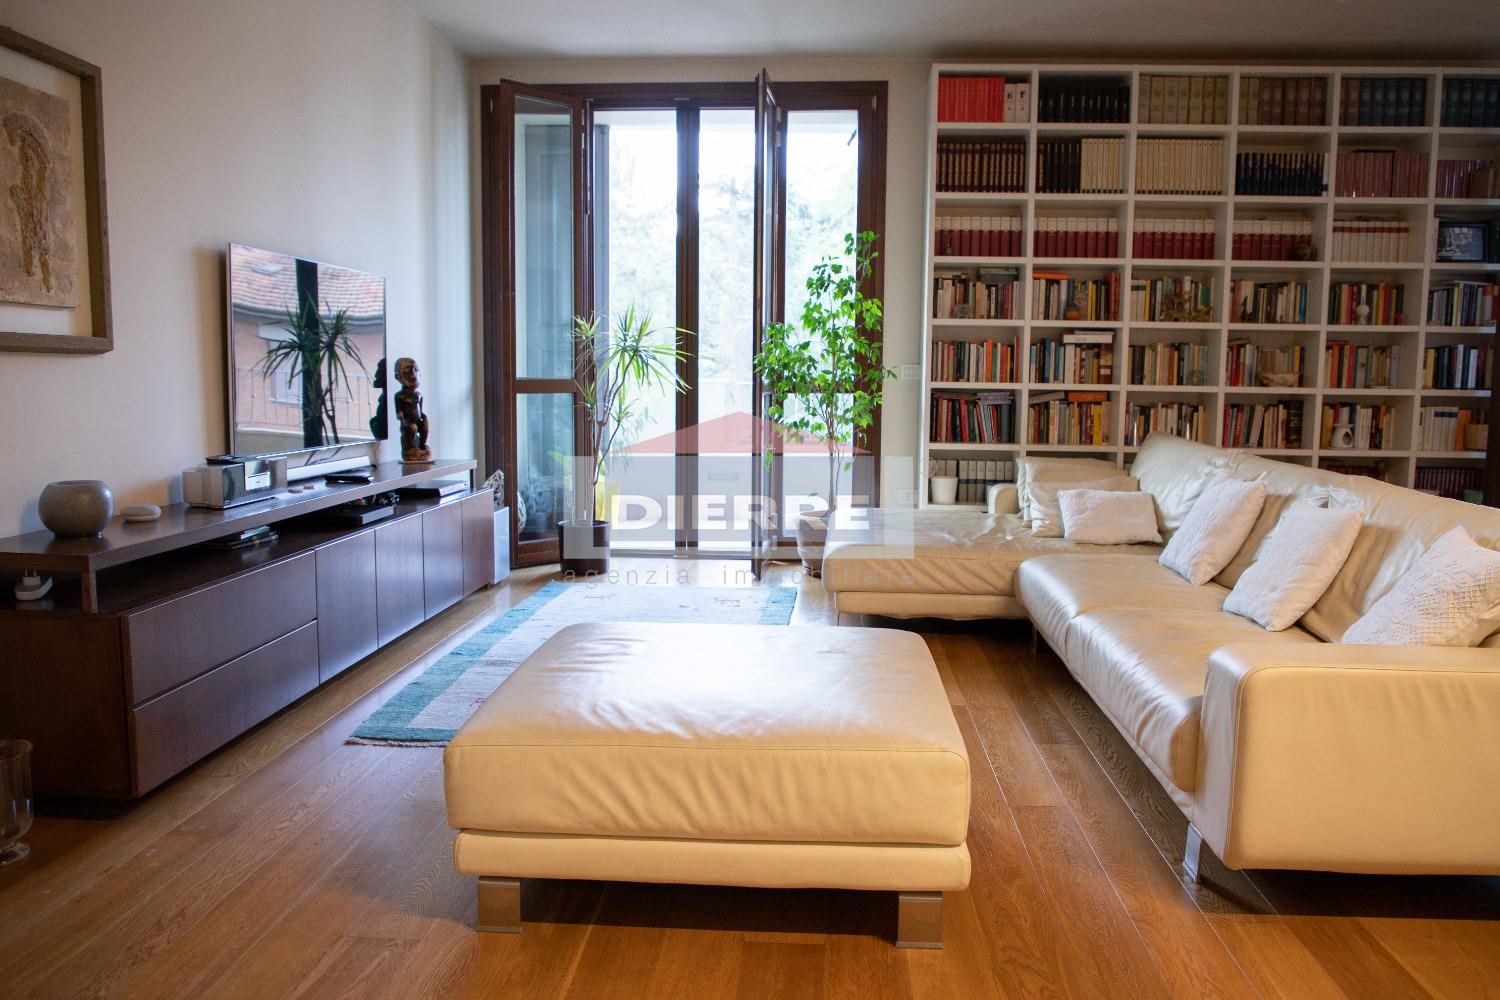 Appartamento in vendita a Carpi, 4 locali, prezzo € 450.000 | CambioCasa.it